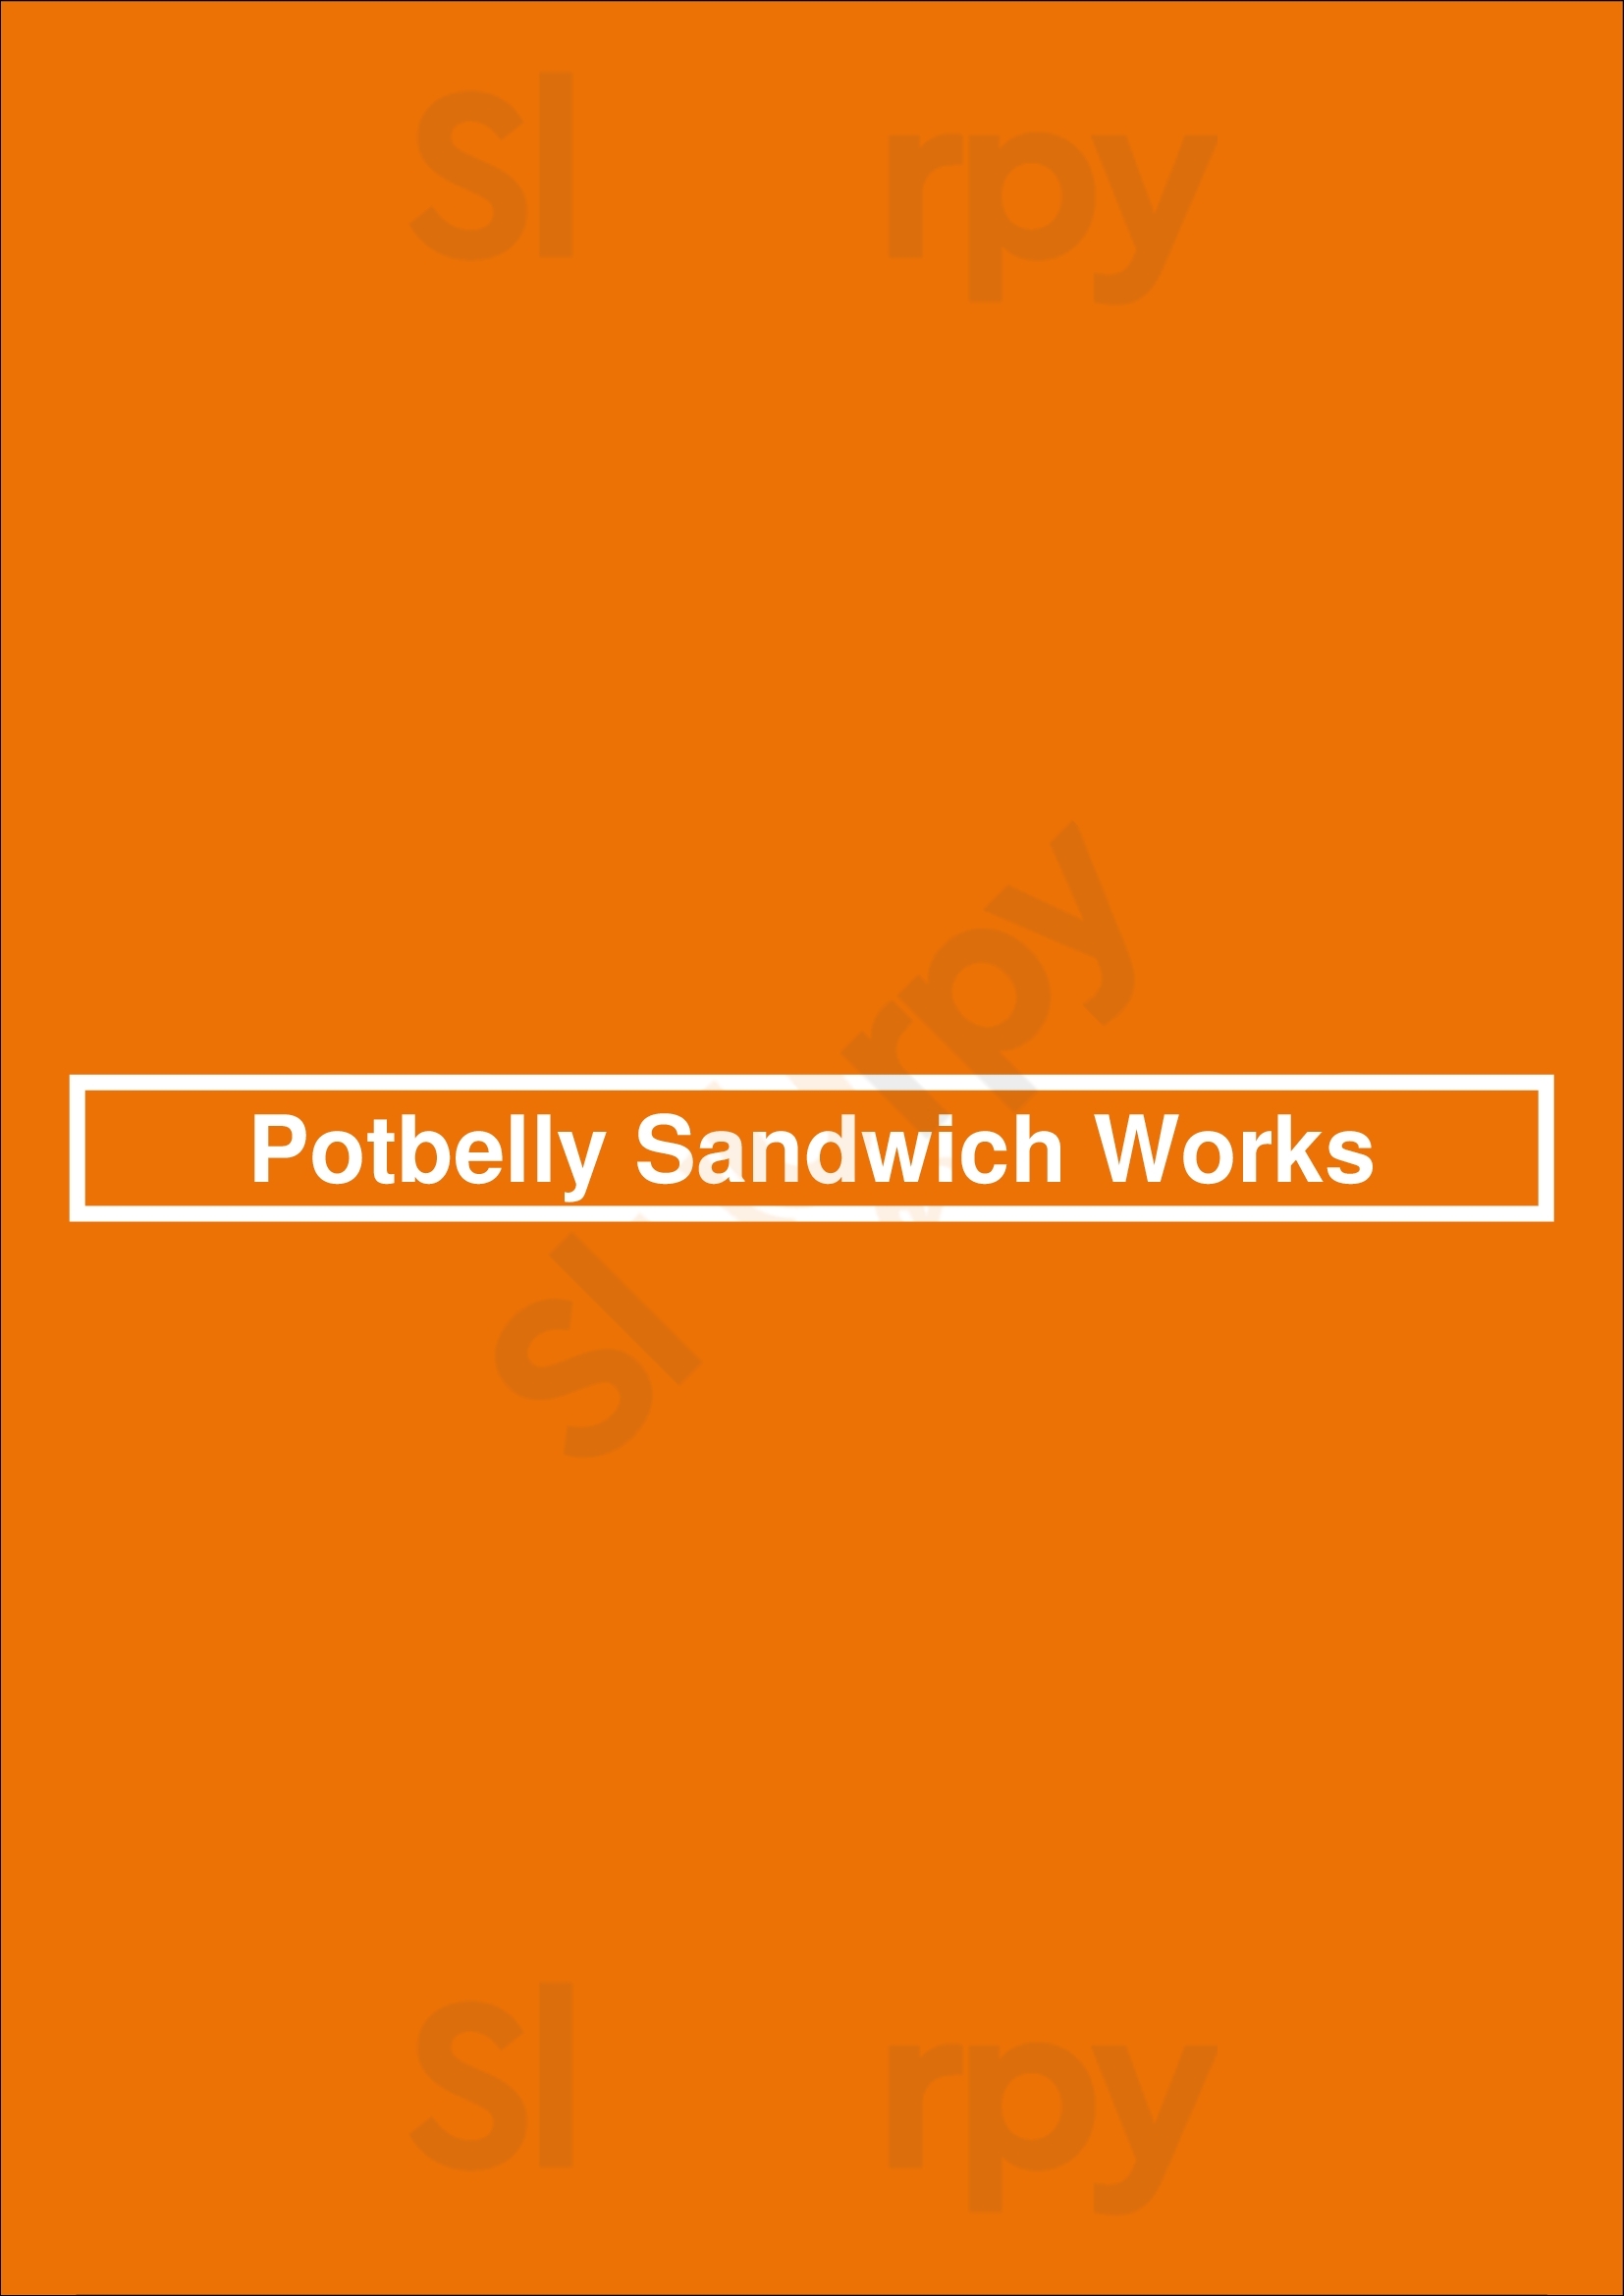 Potbelly Sandwich Shop Austin Menu - 1